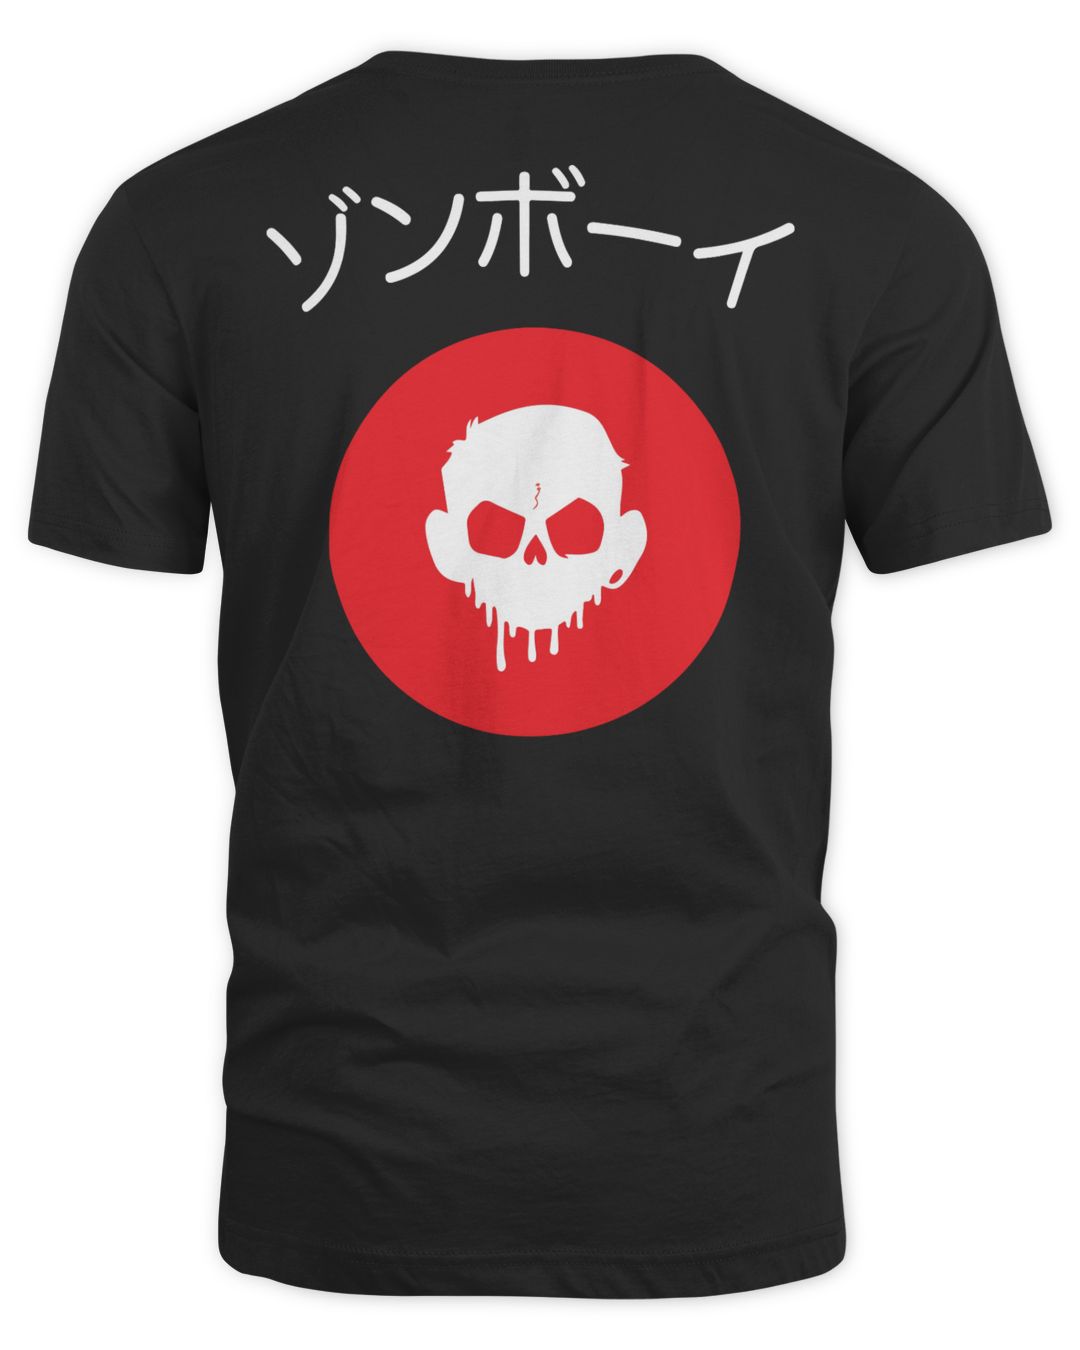 Zomboy Merch Tokyo Shirt